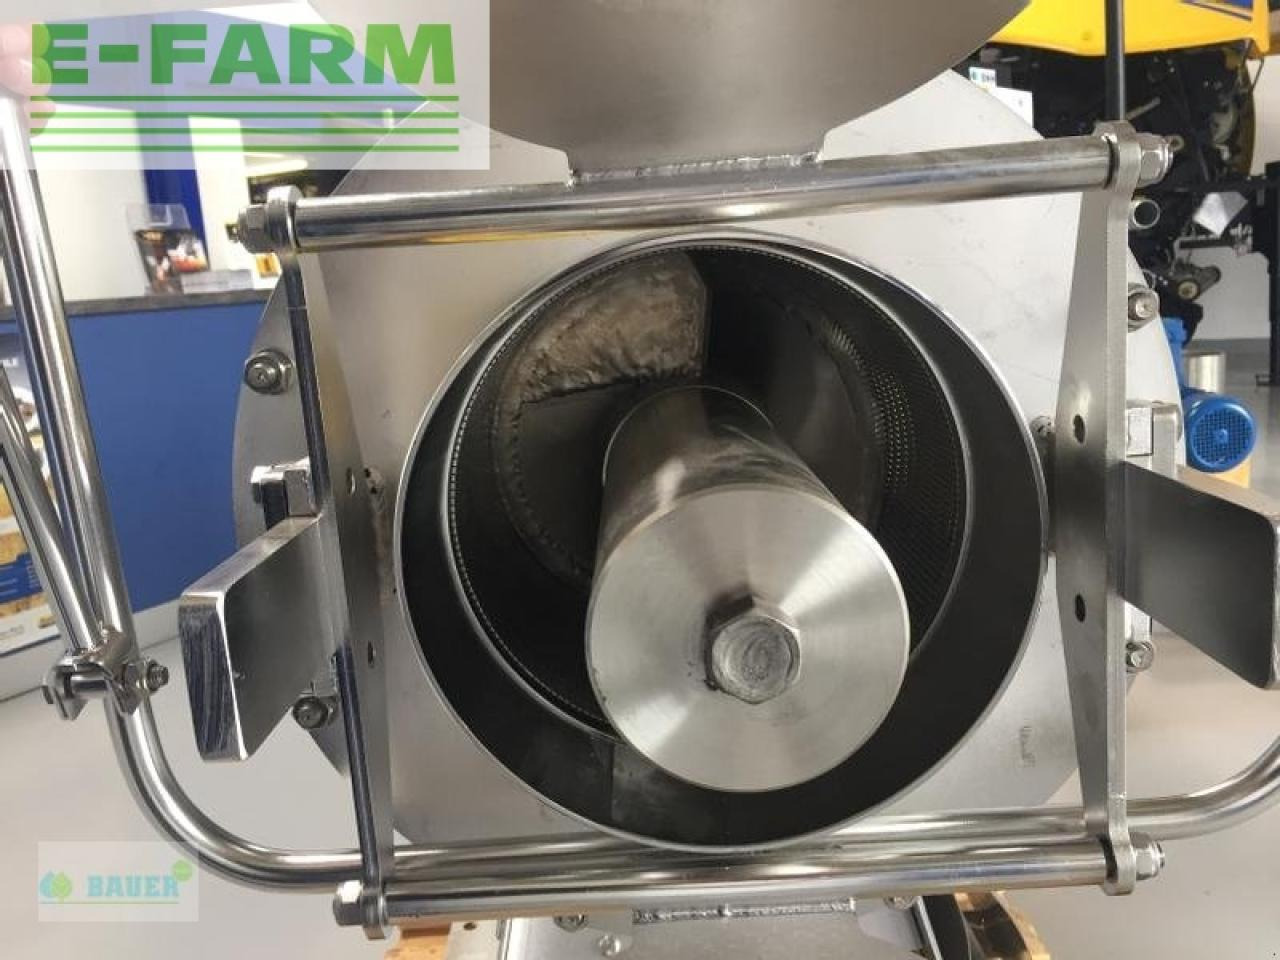 Bauer fan 1.2-520 - Fertilizing equipment: picture 2